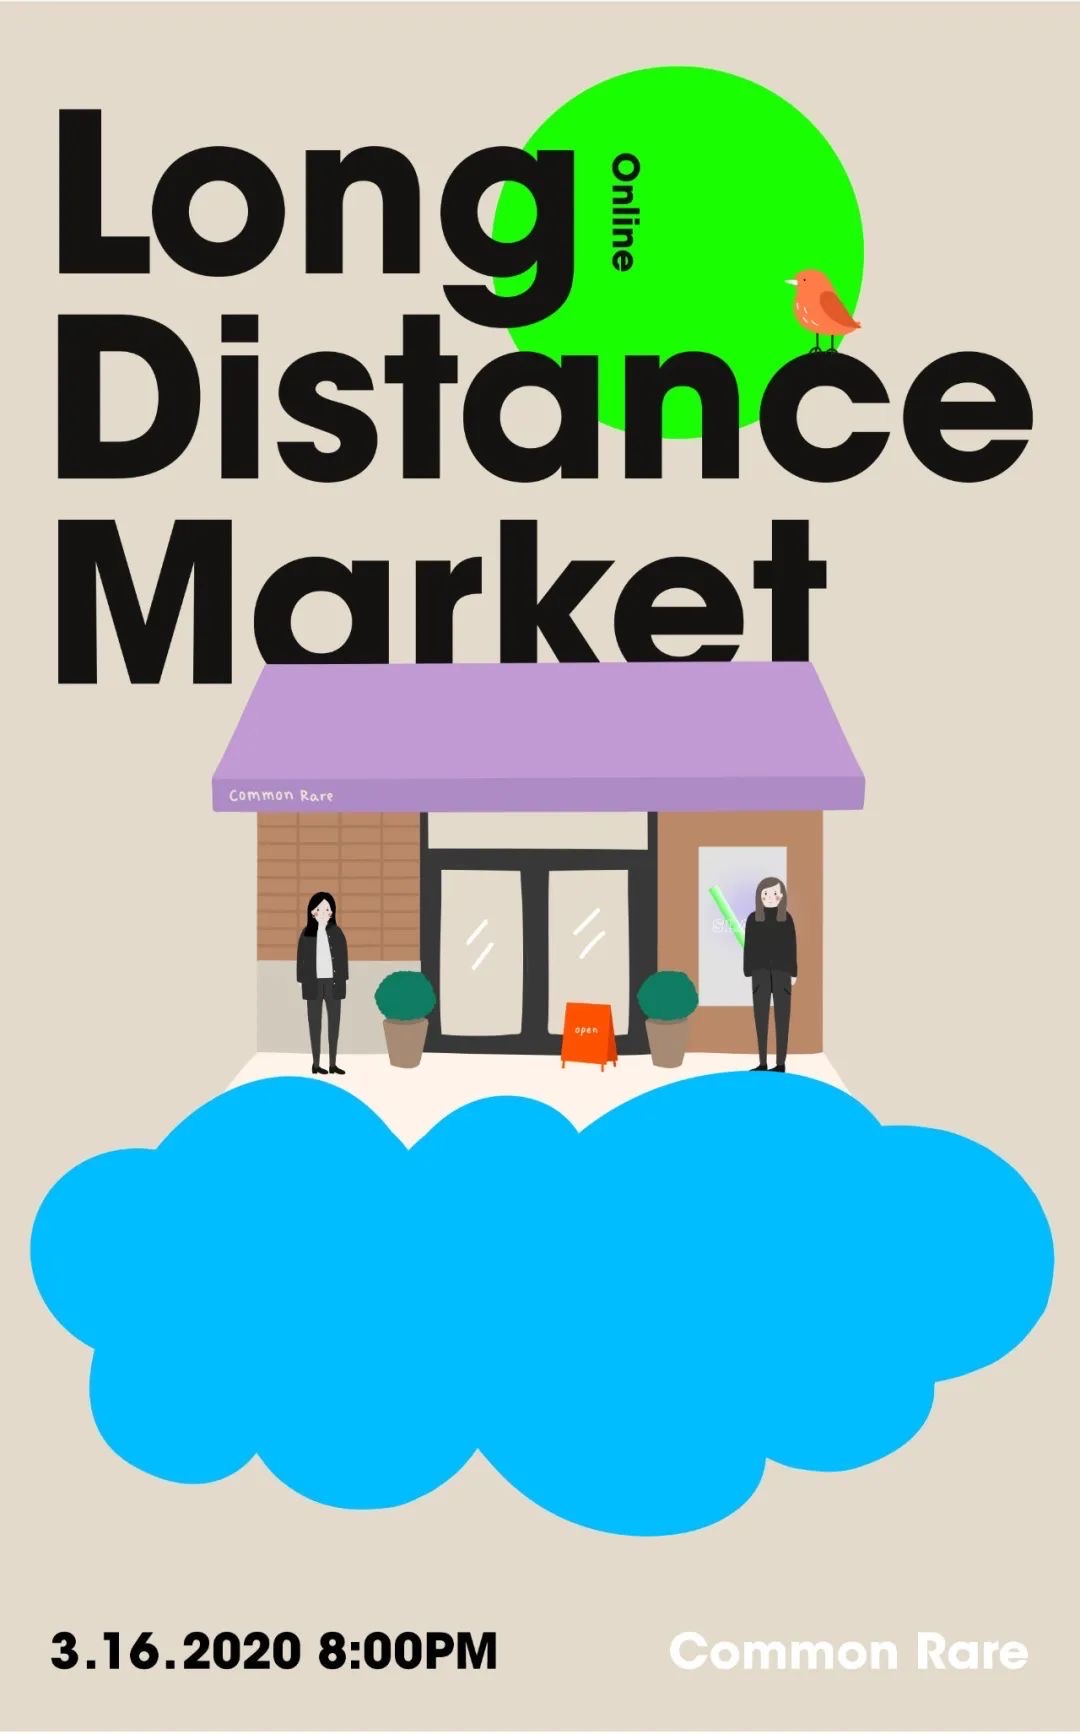 凡几首届线上市集“Long Distance Market”来了!